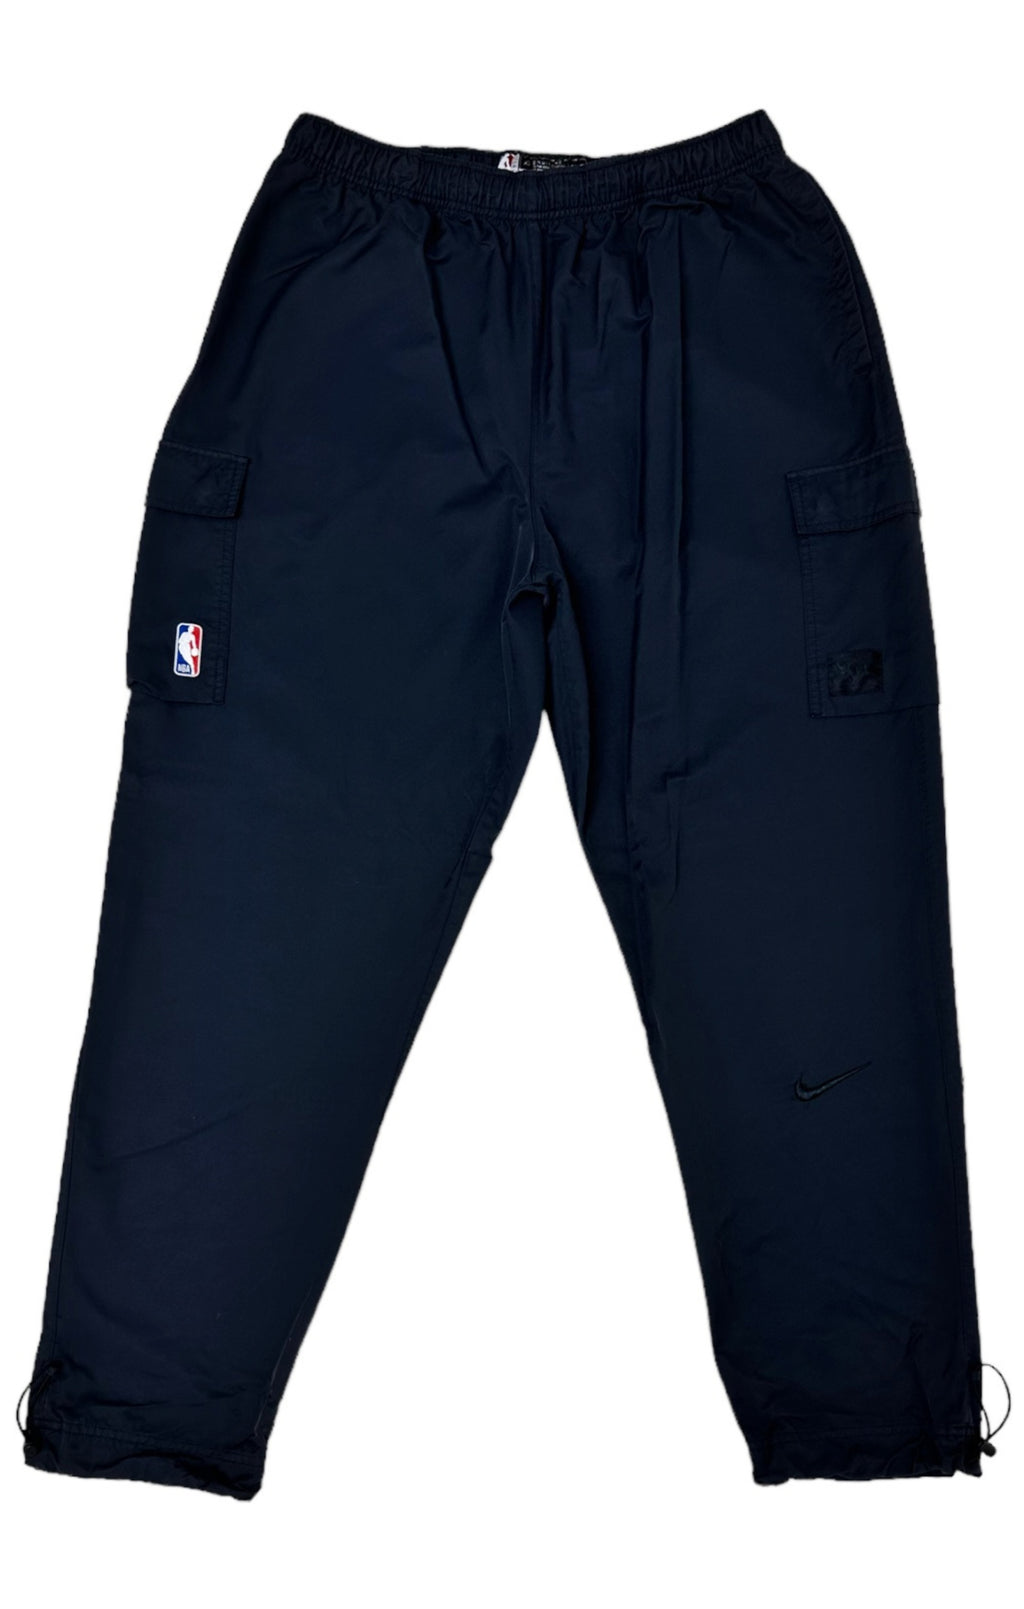 NBA AUTHENTICS x NIKE Pants Size: 2XL